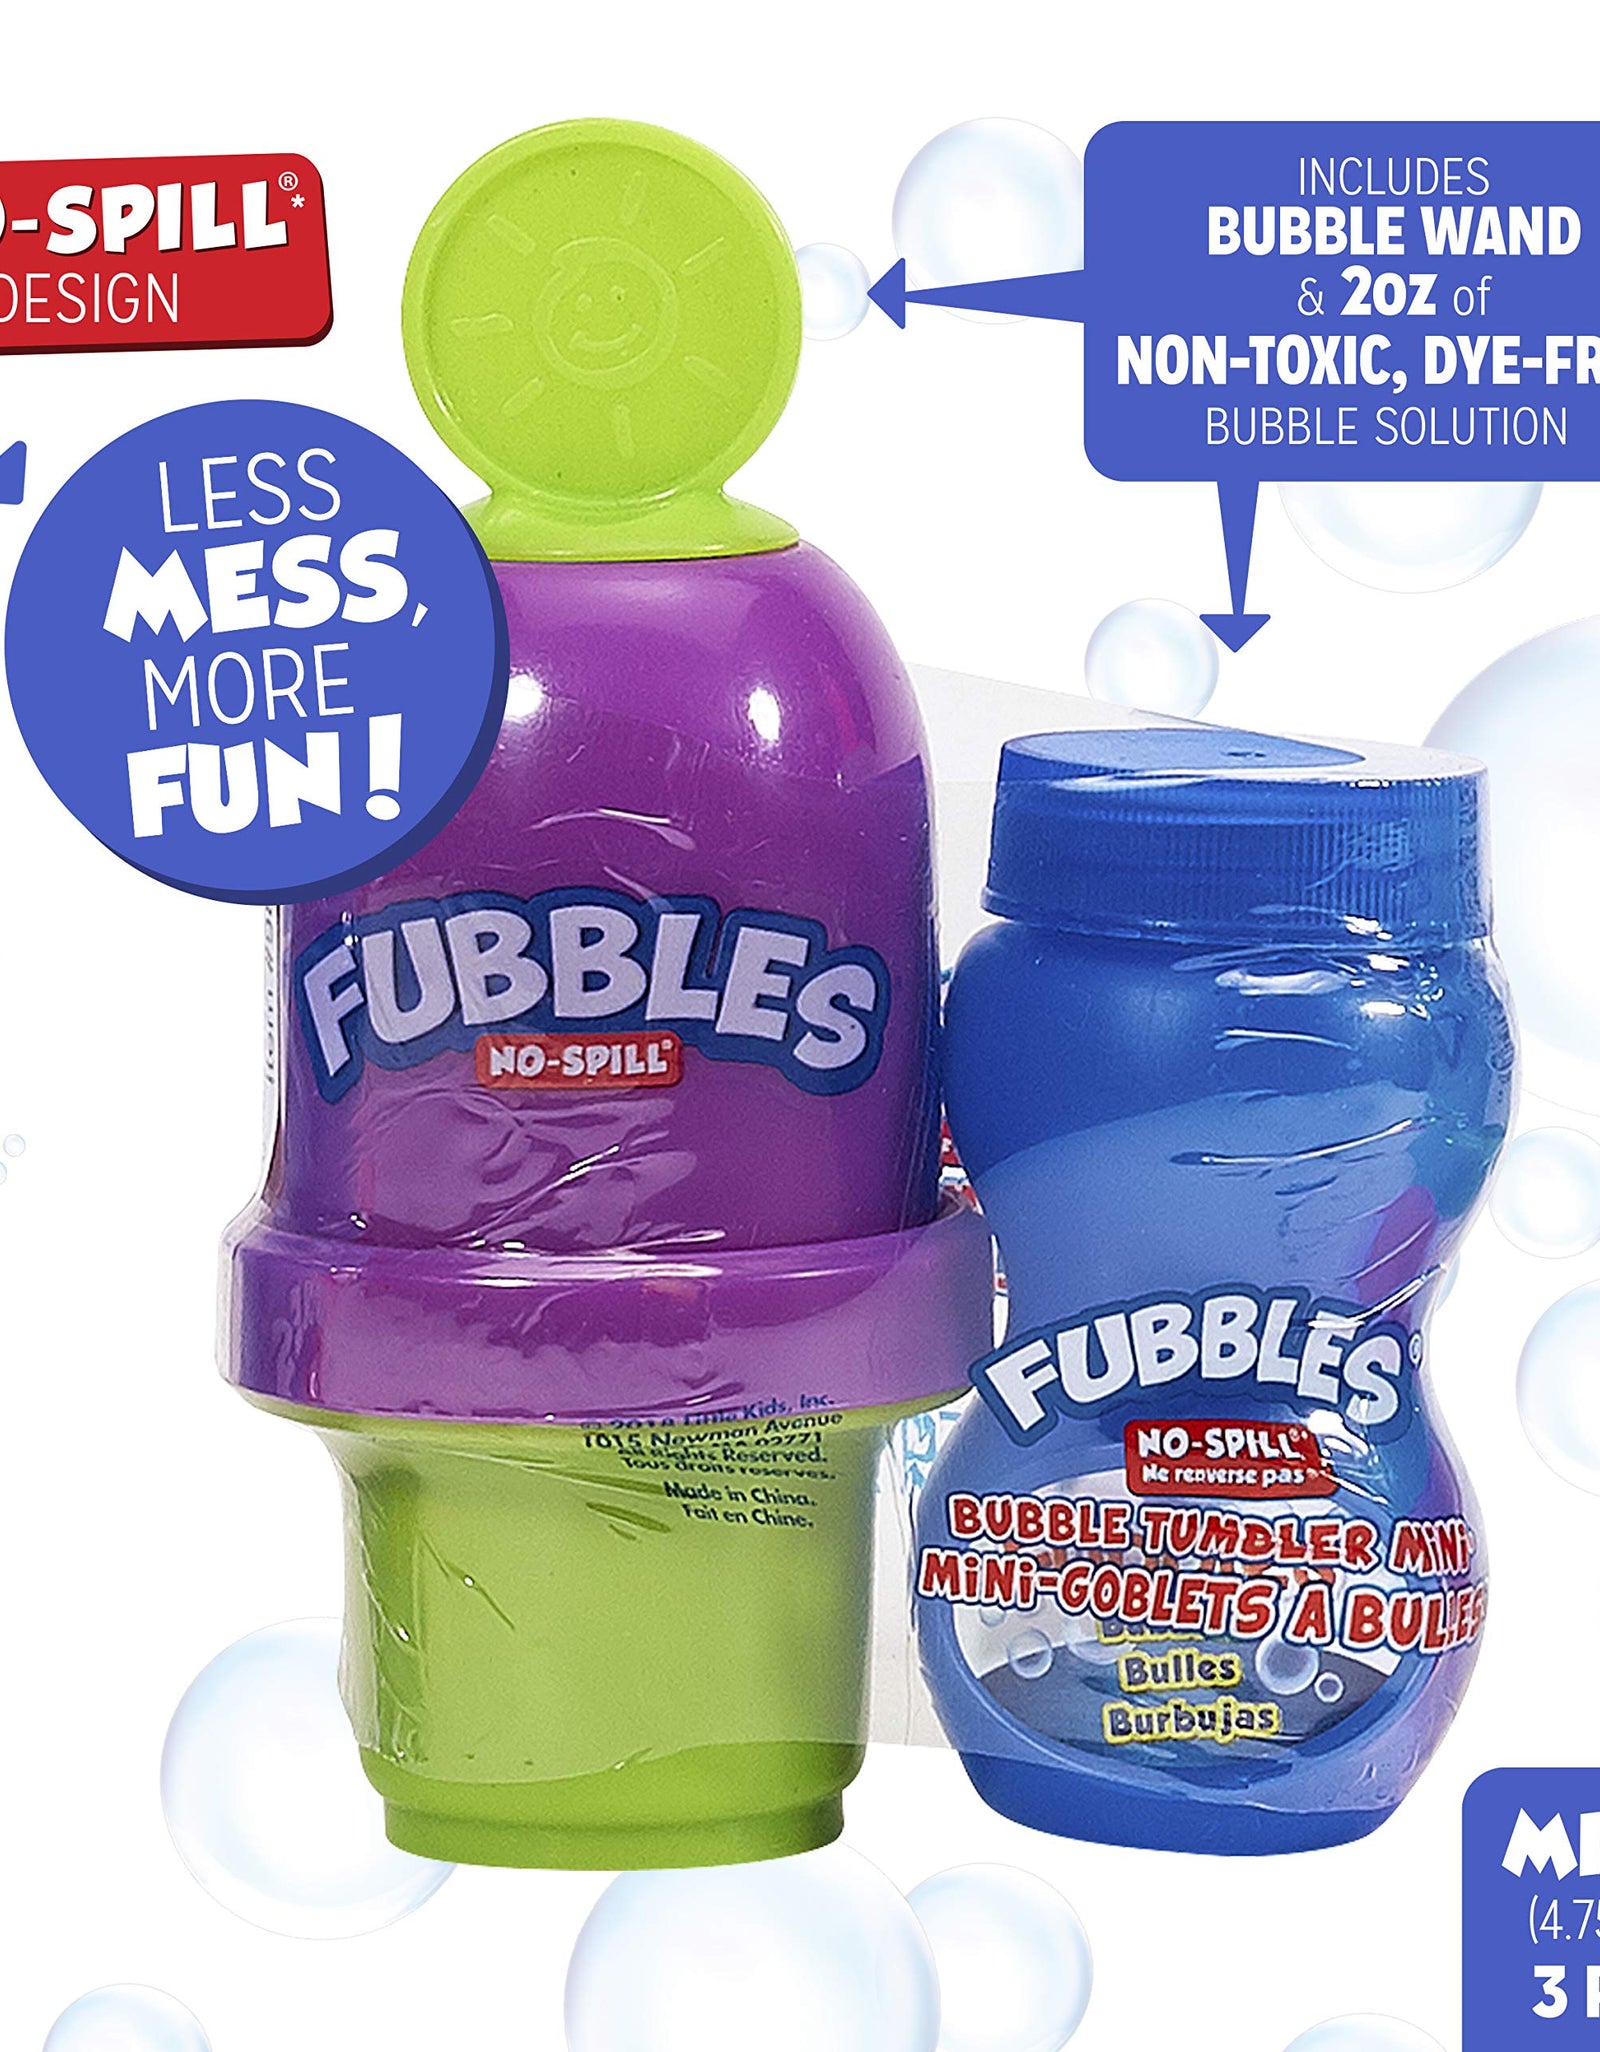 Little Kids Fubbles No Spill Bubble Tumbler Mini 3 Pack Party Favor Set, Includes 2oz of bubble solution and a wand per bottle (assorted colors)